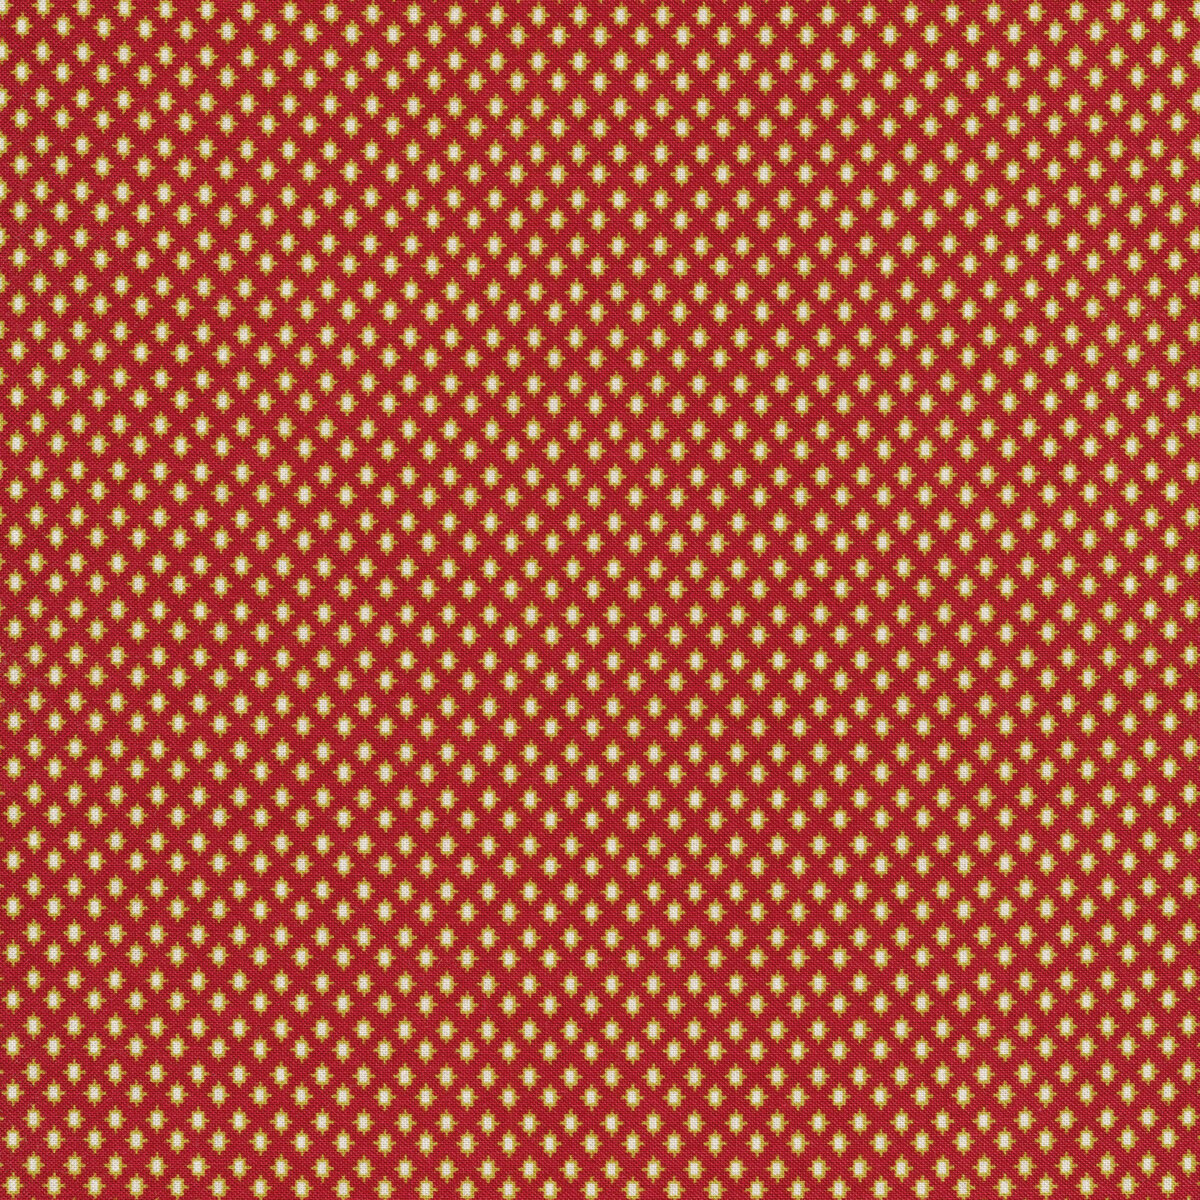 Rowan 52938-2 Crimson Shirting by Windham Fabrics | Shabby Fabrics